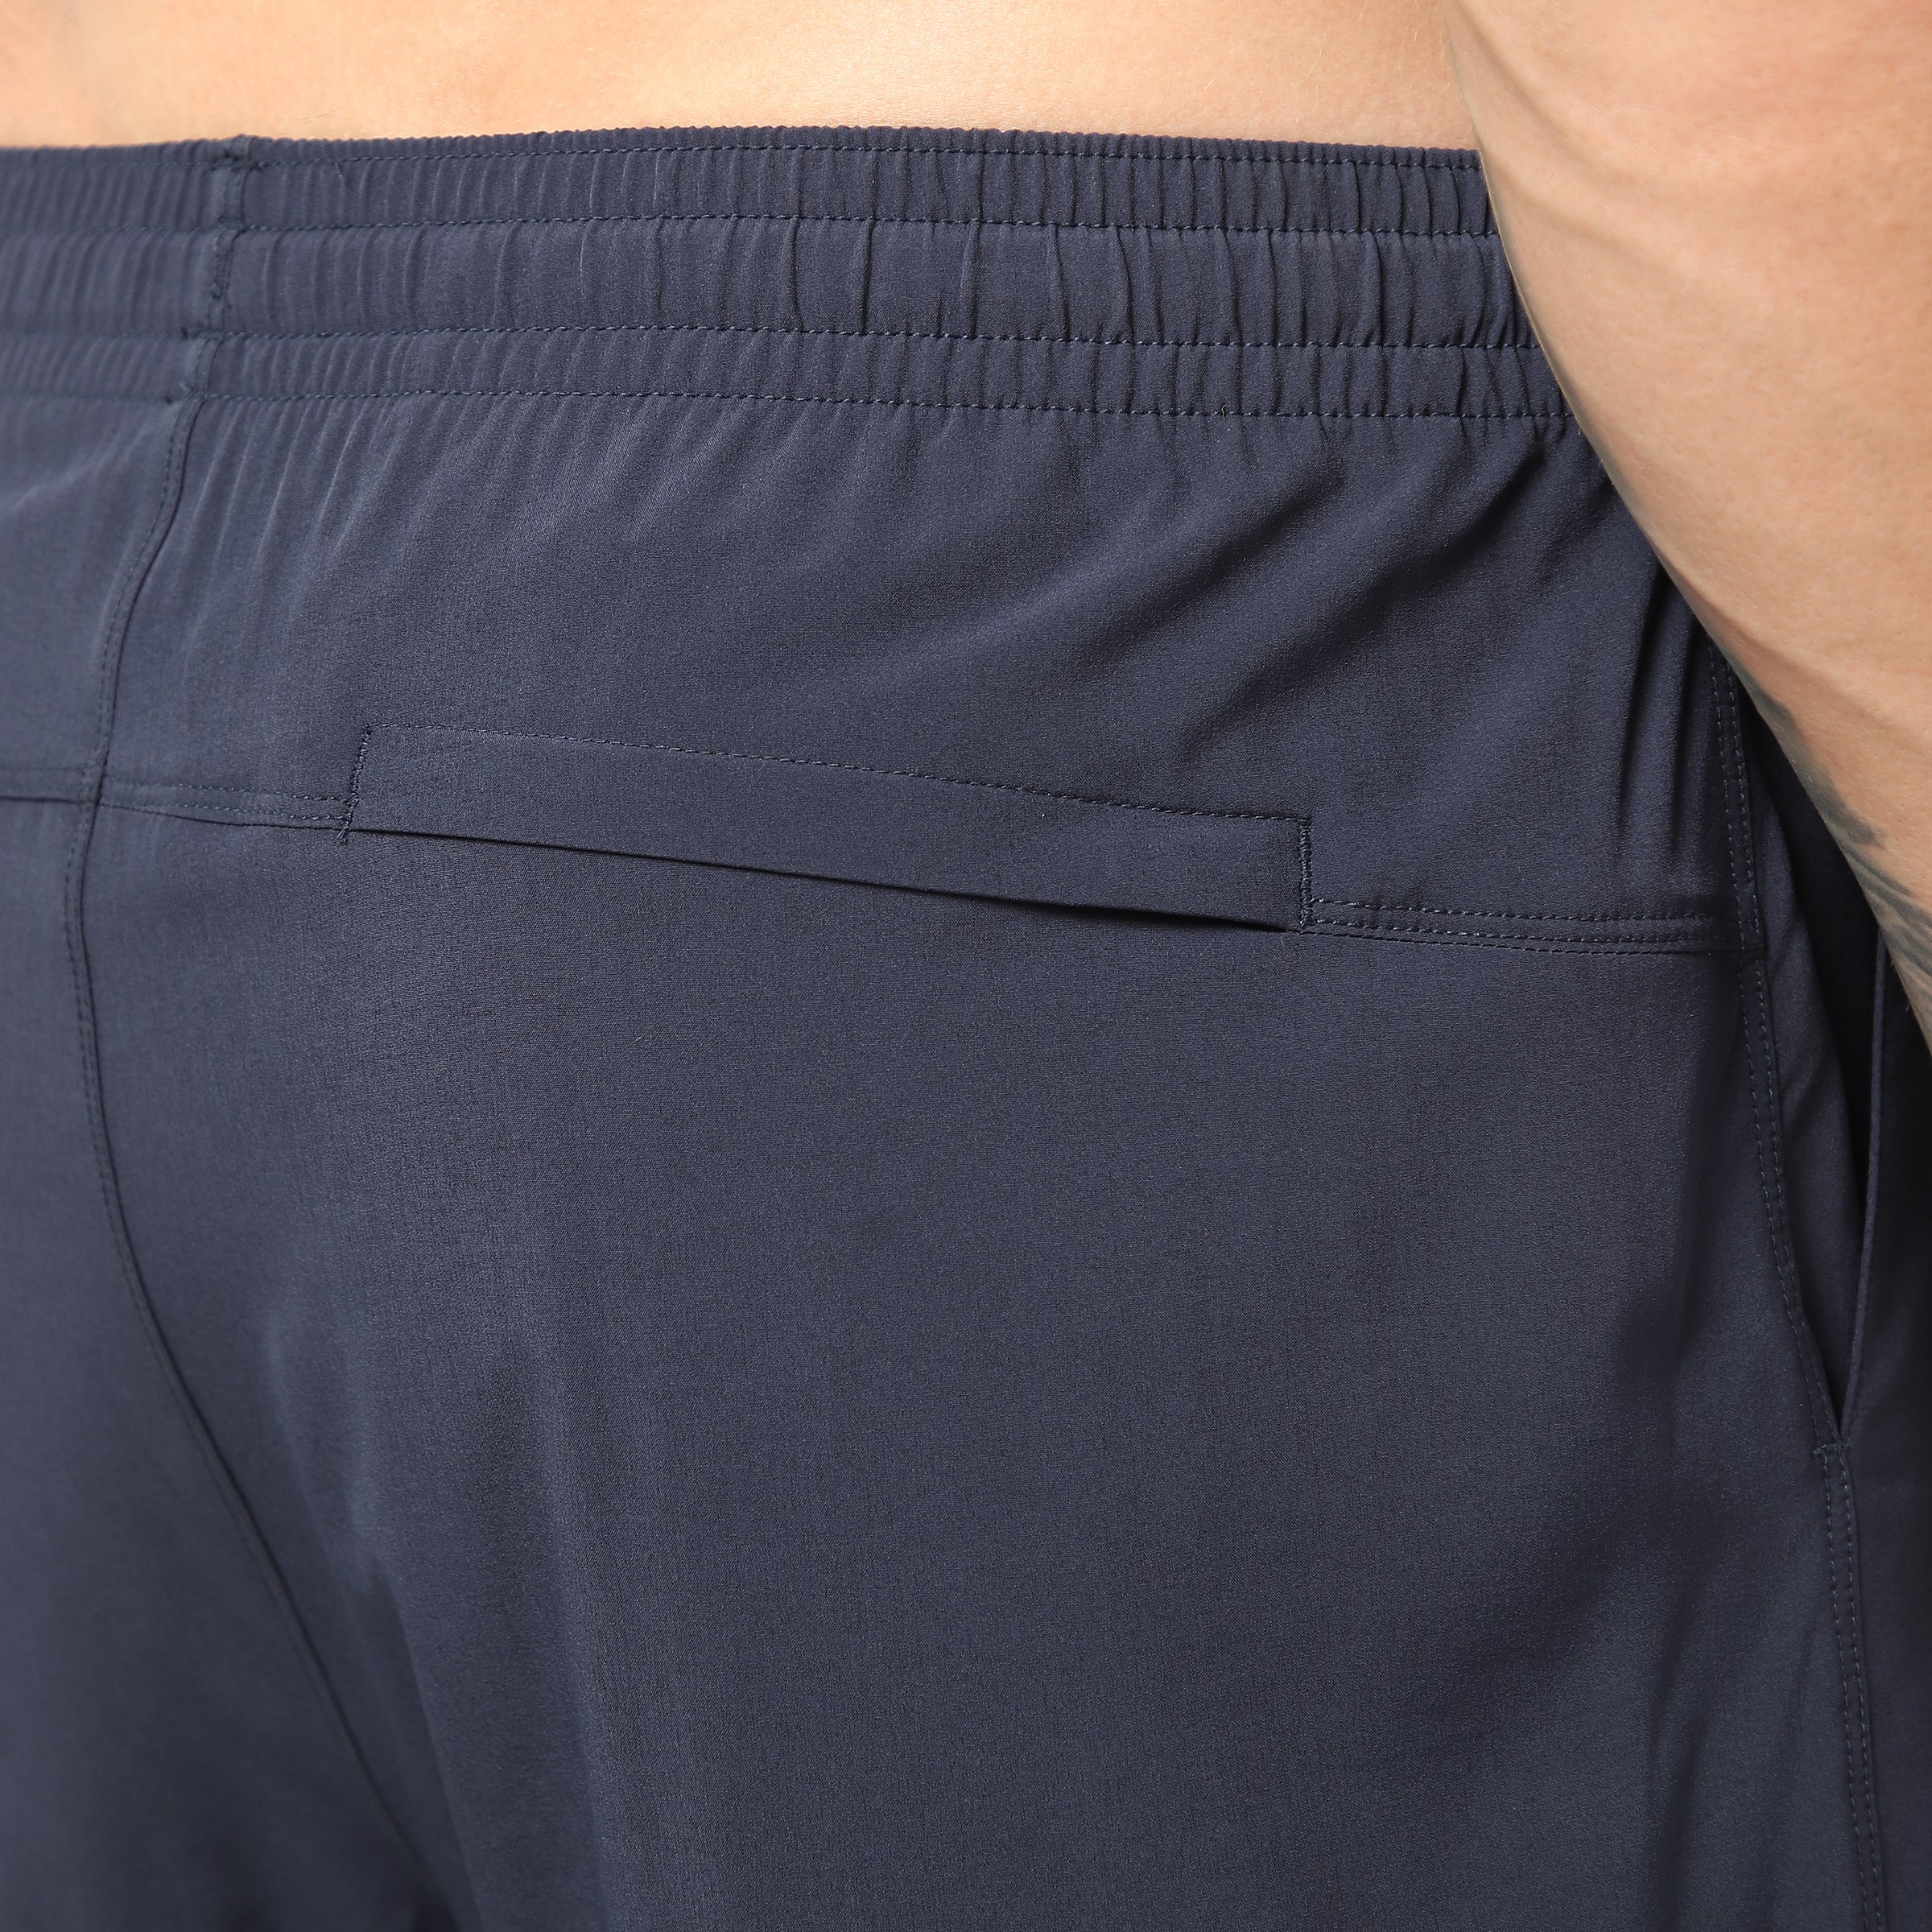 Run Short v2 7" Navy close up of back right hidden zipper pocket